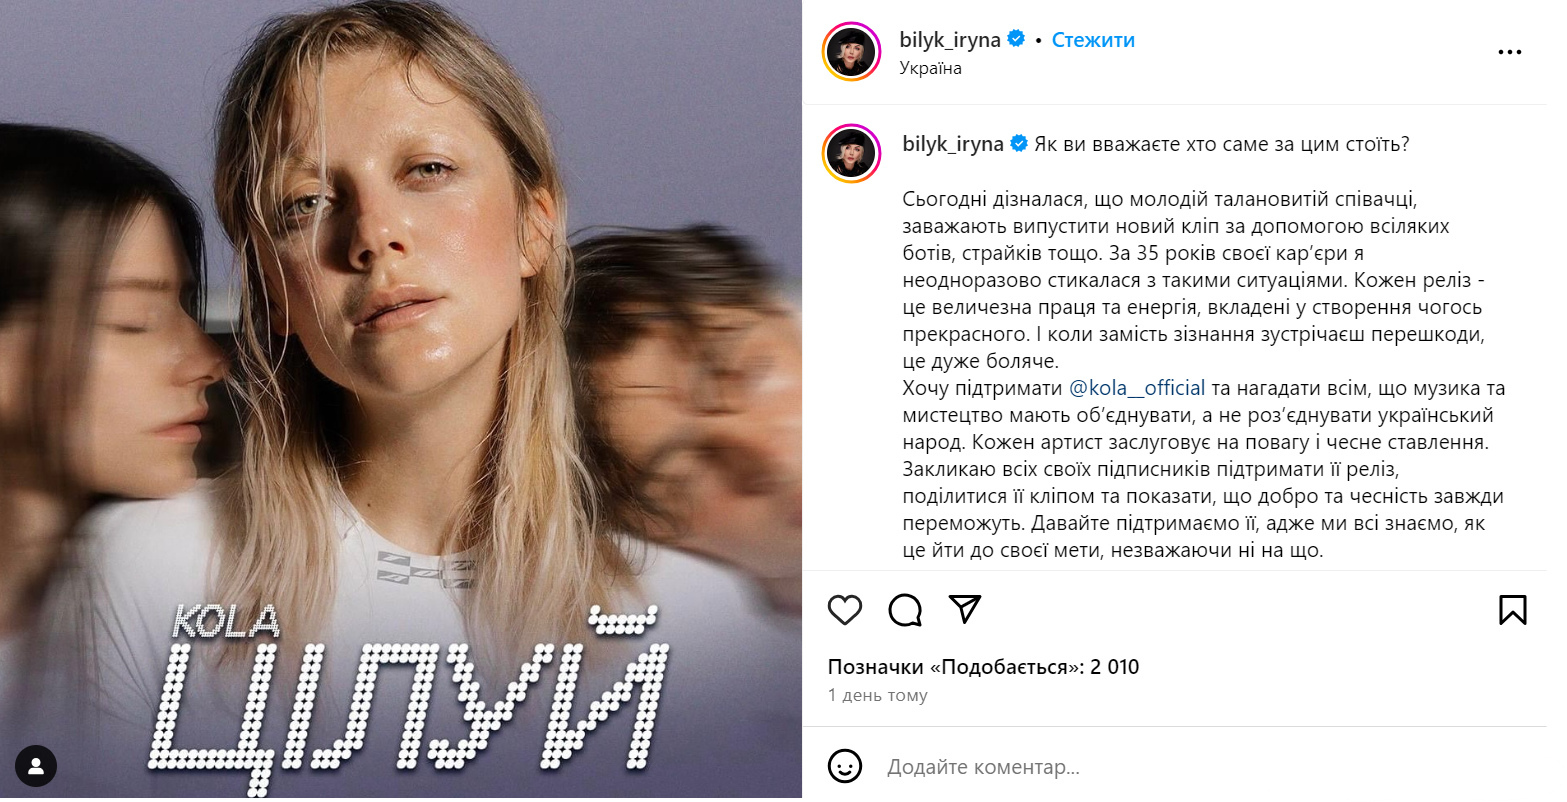 Ирина Билык публично поддержала KOLA, которая обвинила коллег по шоубизу в ненависти и зависти